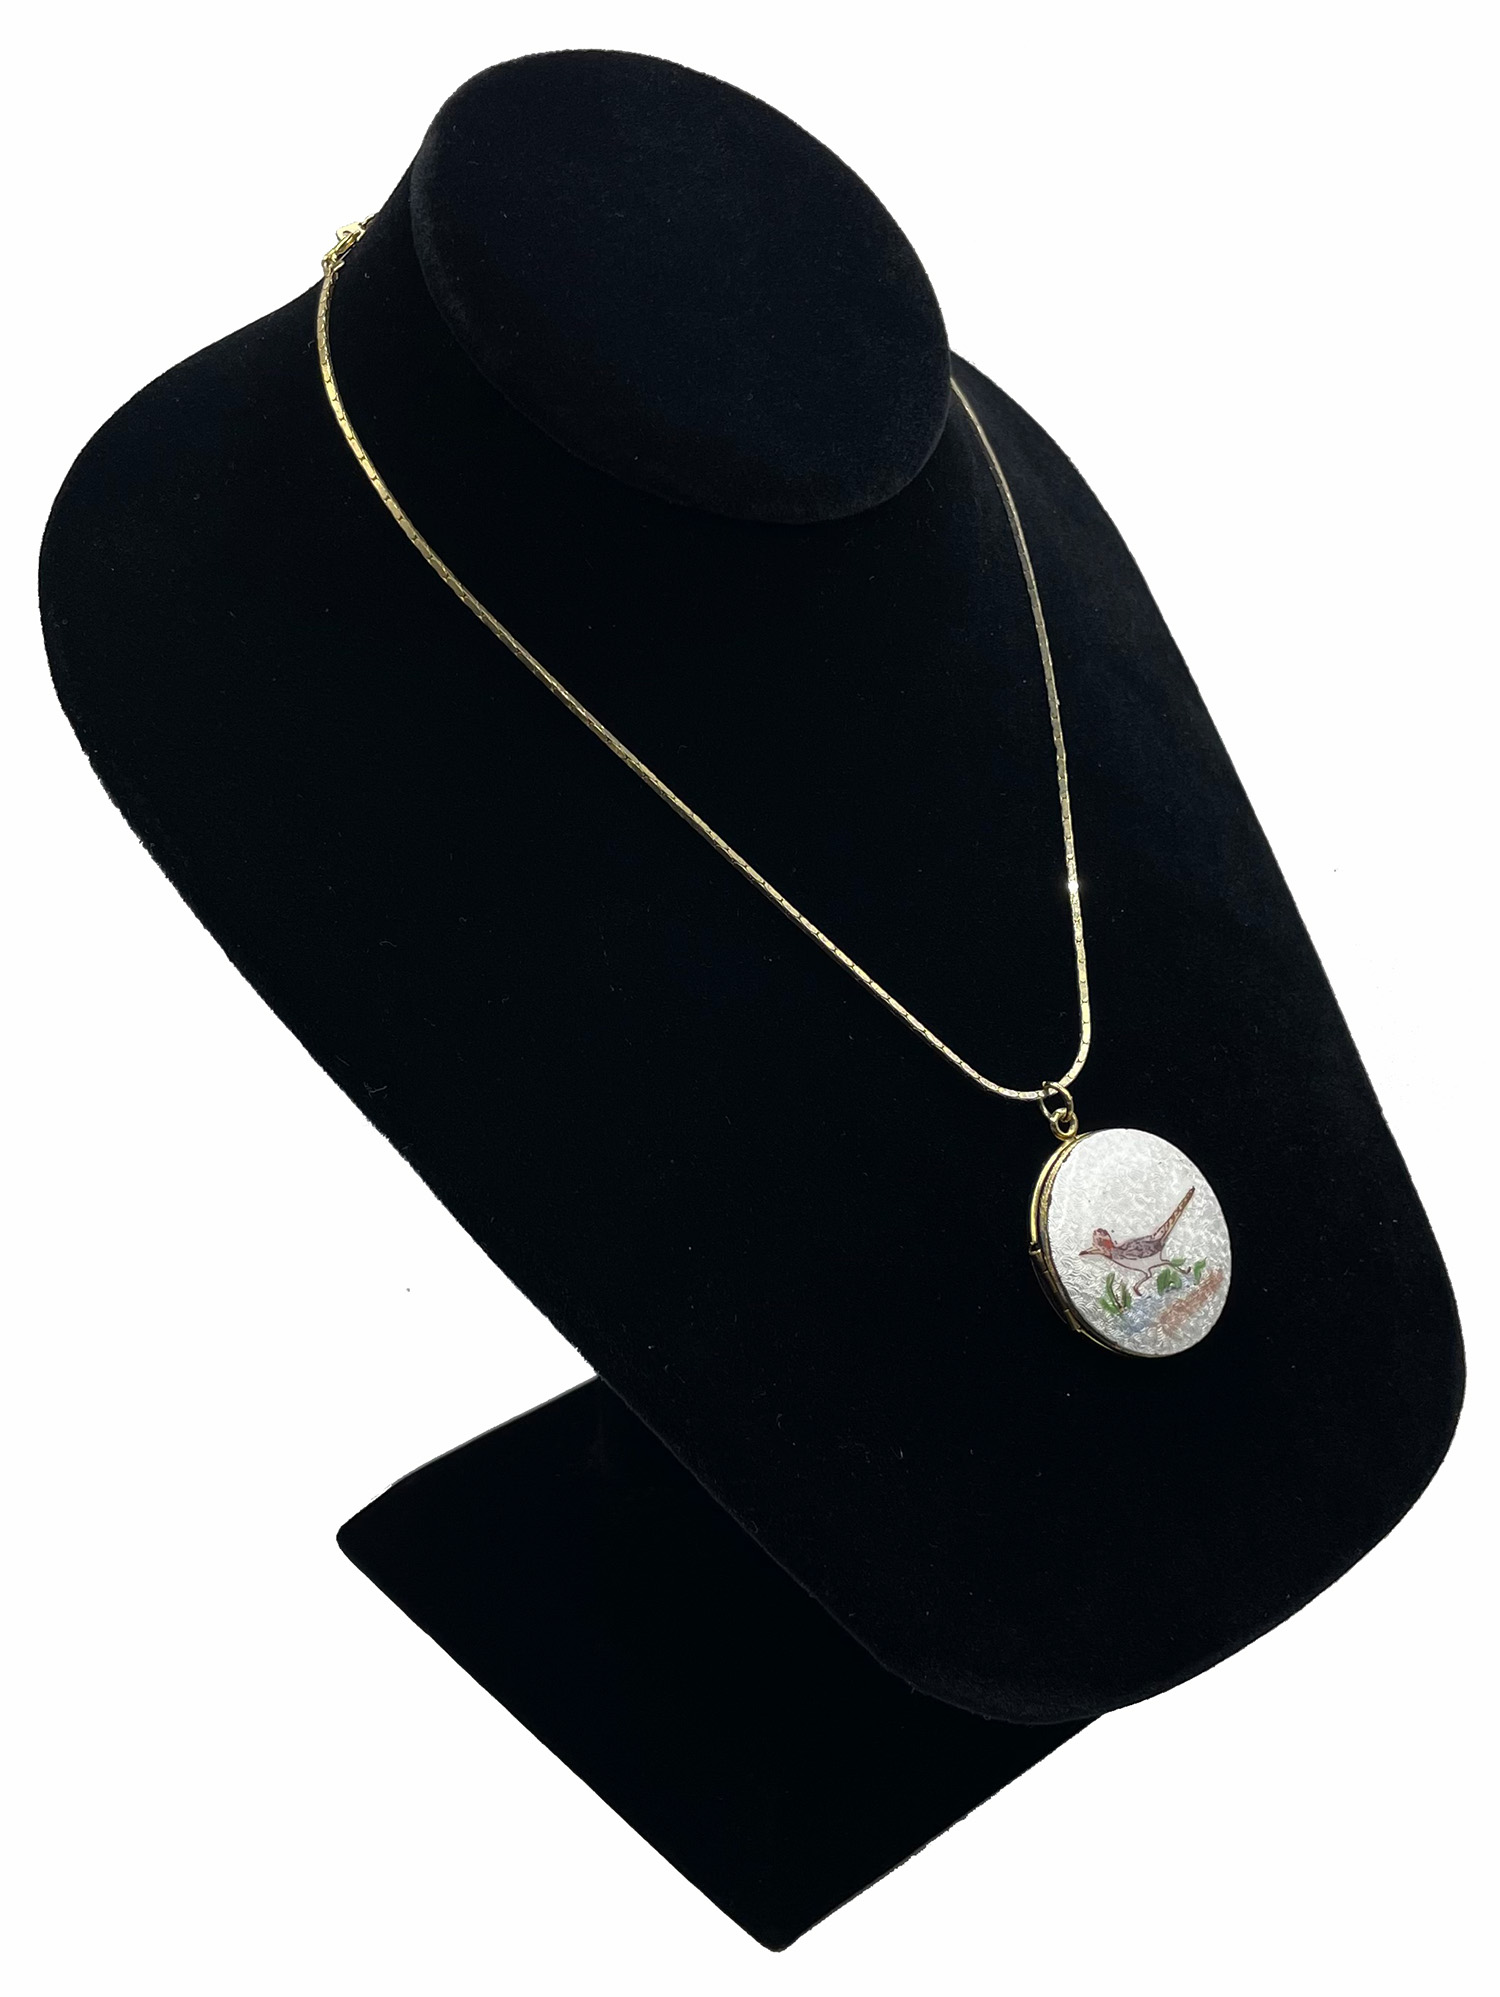 Enameled roadrunner locket pendant necklace